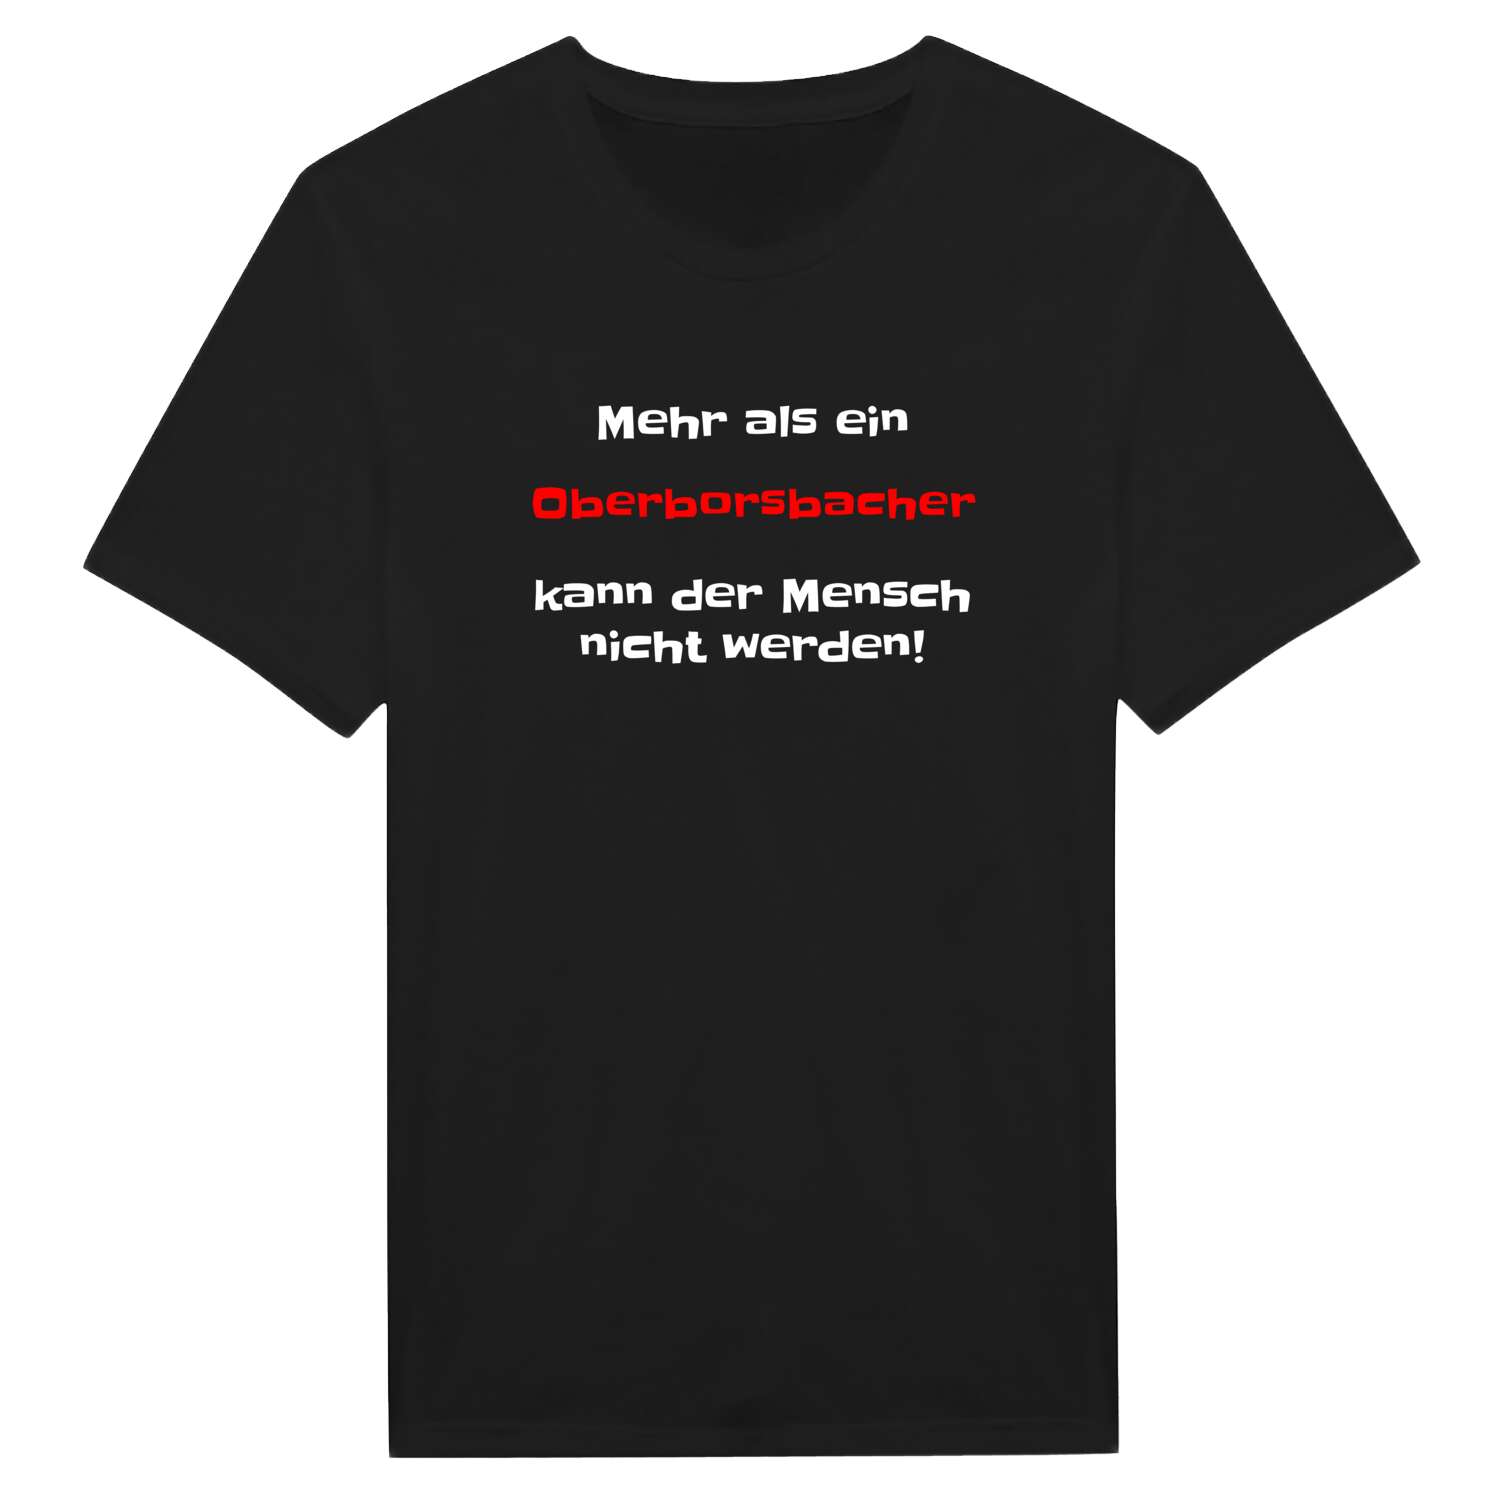 Oberborsbach T-Shirt »Mehr als ein«